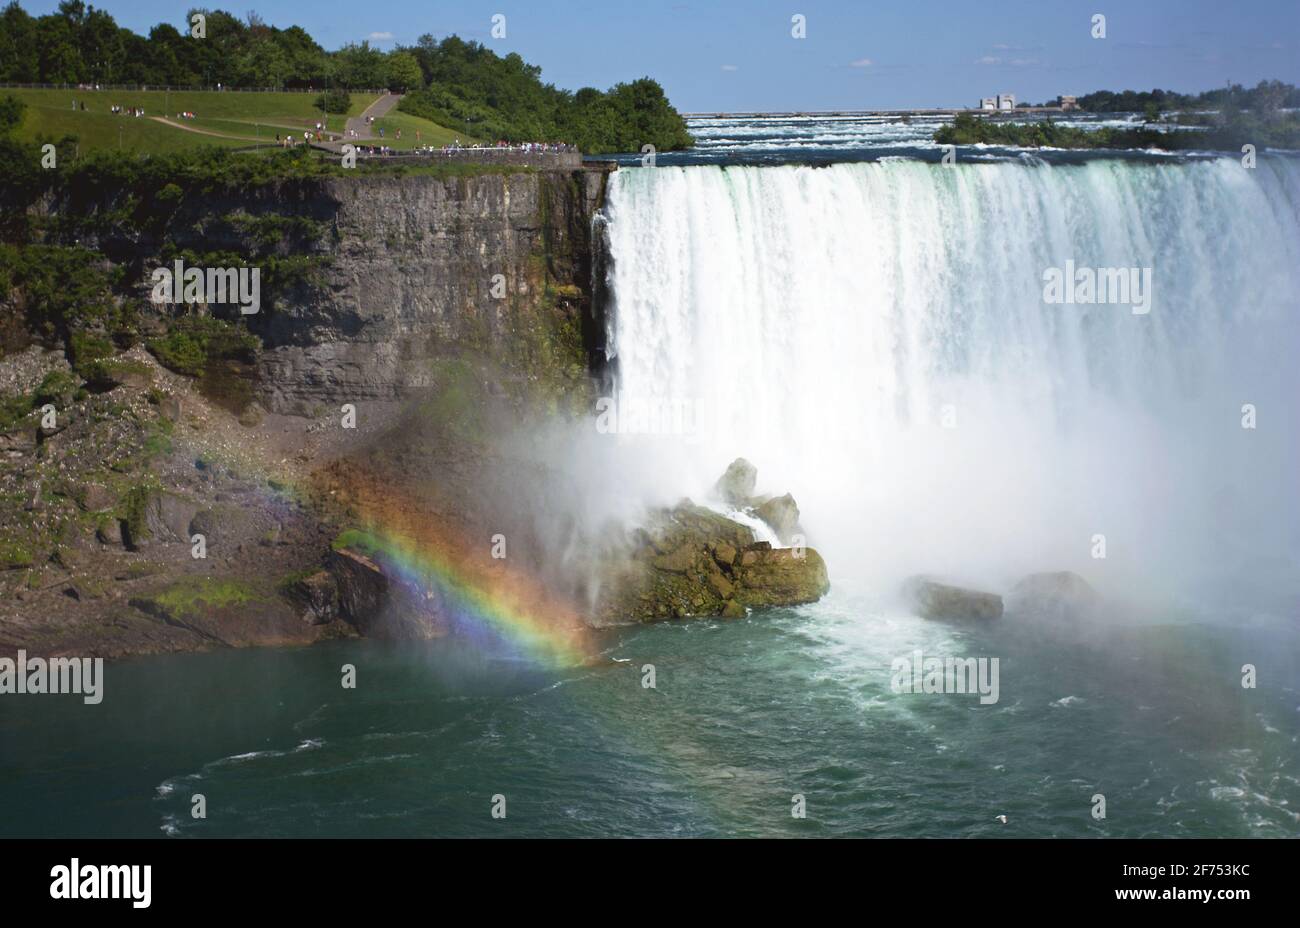 A rainbow shines bright at Niagara Falls during the day. Stock Photo